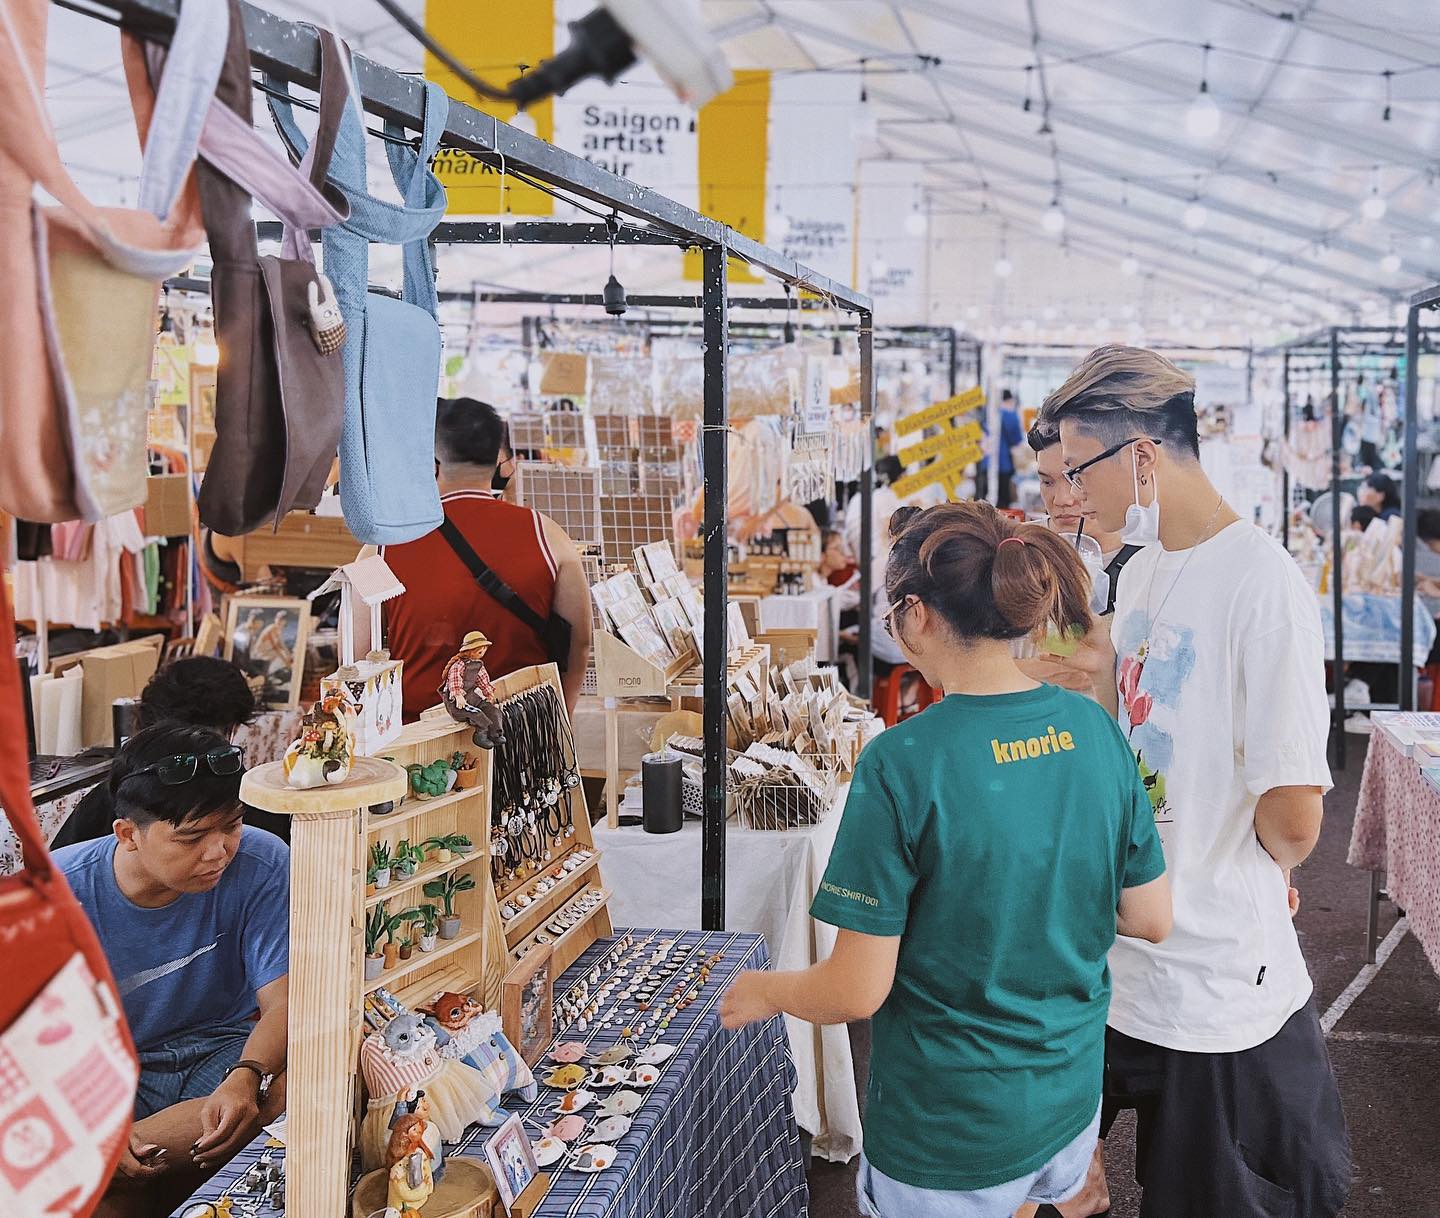  Saigon Artist Fair là phiên chợ bày bán những mặt hàng được thiết kế bởi các nghệ sĩ trong nước. Từ quần áo đến phụ kiện và còn cả ti tỉ thứ khác với những hình vẽ ấn tượng phối cùng gam màu bắt mắt. Đây nhất định là một trong những thiên đường dành cho những ai say mê hội họa, nghệ thuật và cái đẹp.